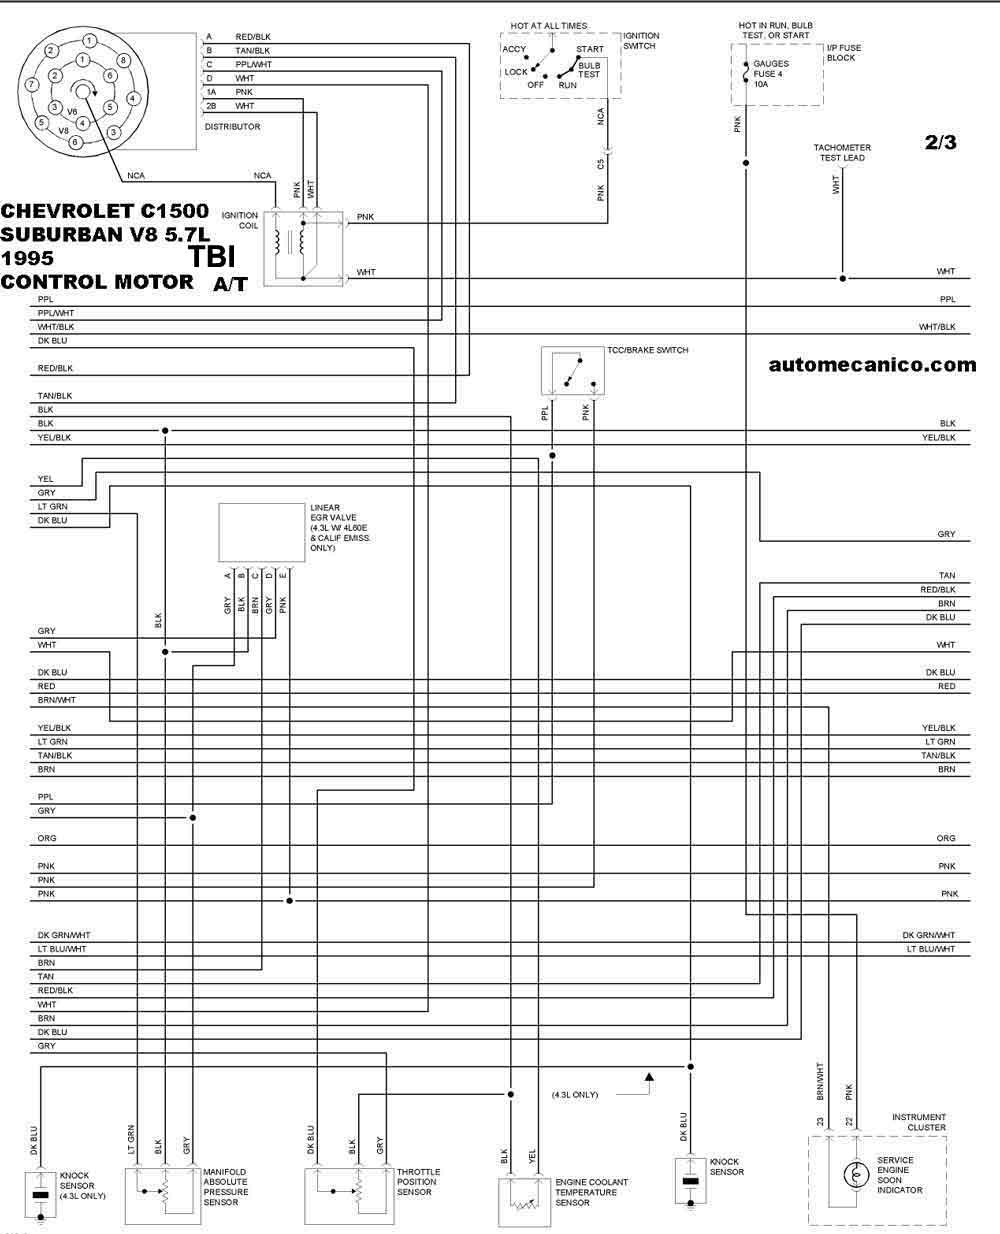 CHEVROLET - Diagramas control del motor 1995 - Graphics - Esquemas |  Vehiculos - Motores - Componentes | Mecanica automotriz